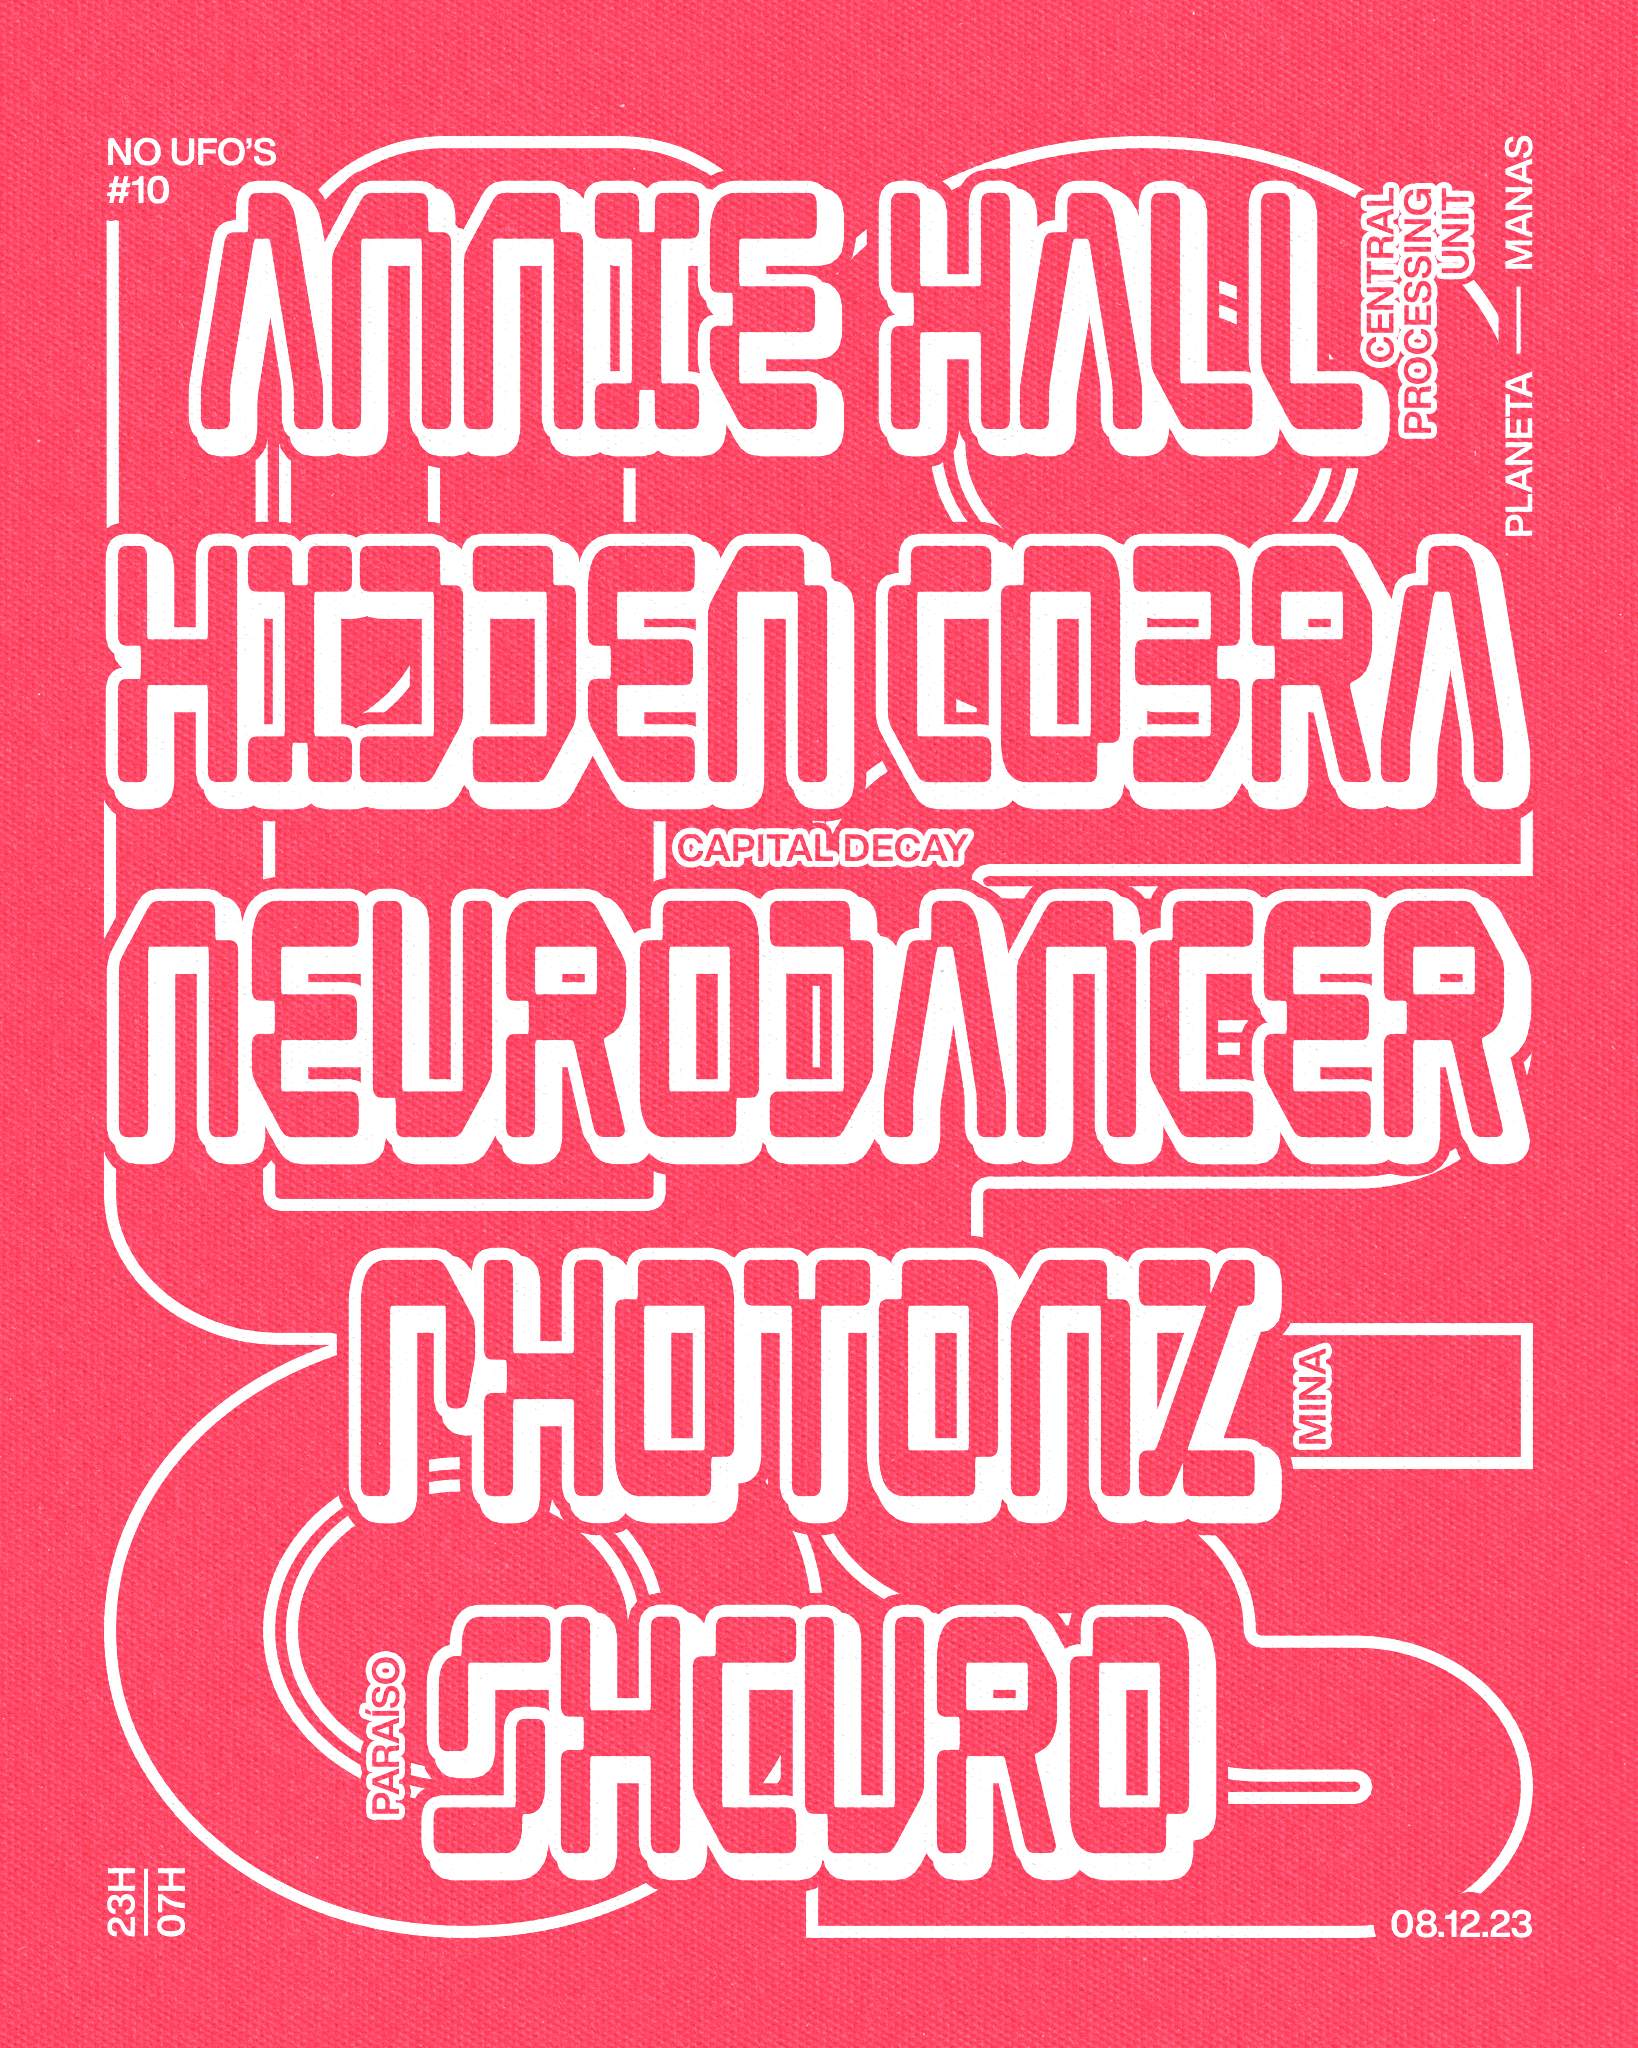 No UFOs #10 with Annie Hall, Hidden Cobra & Neurodancer, Shcuro and Photonz - フライヤー表